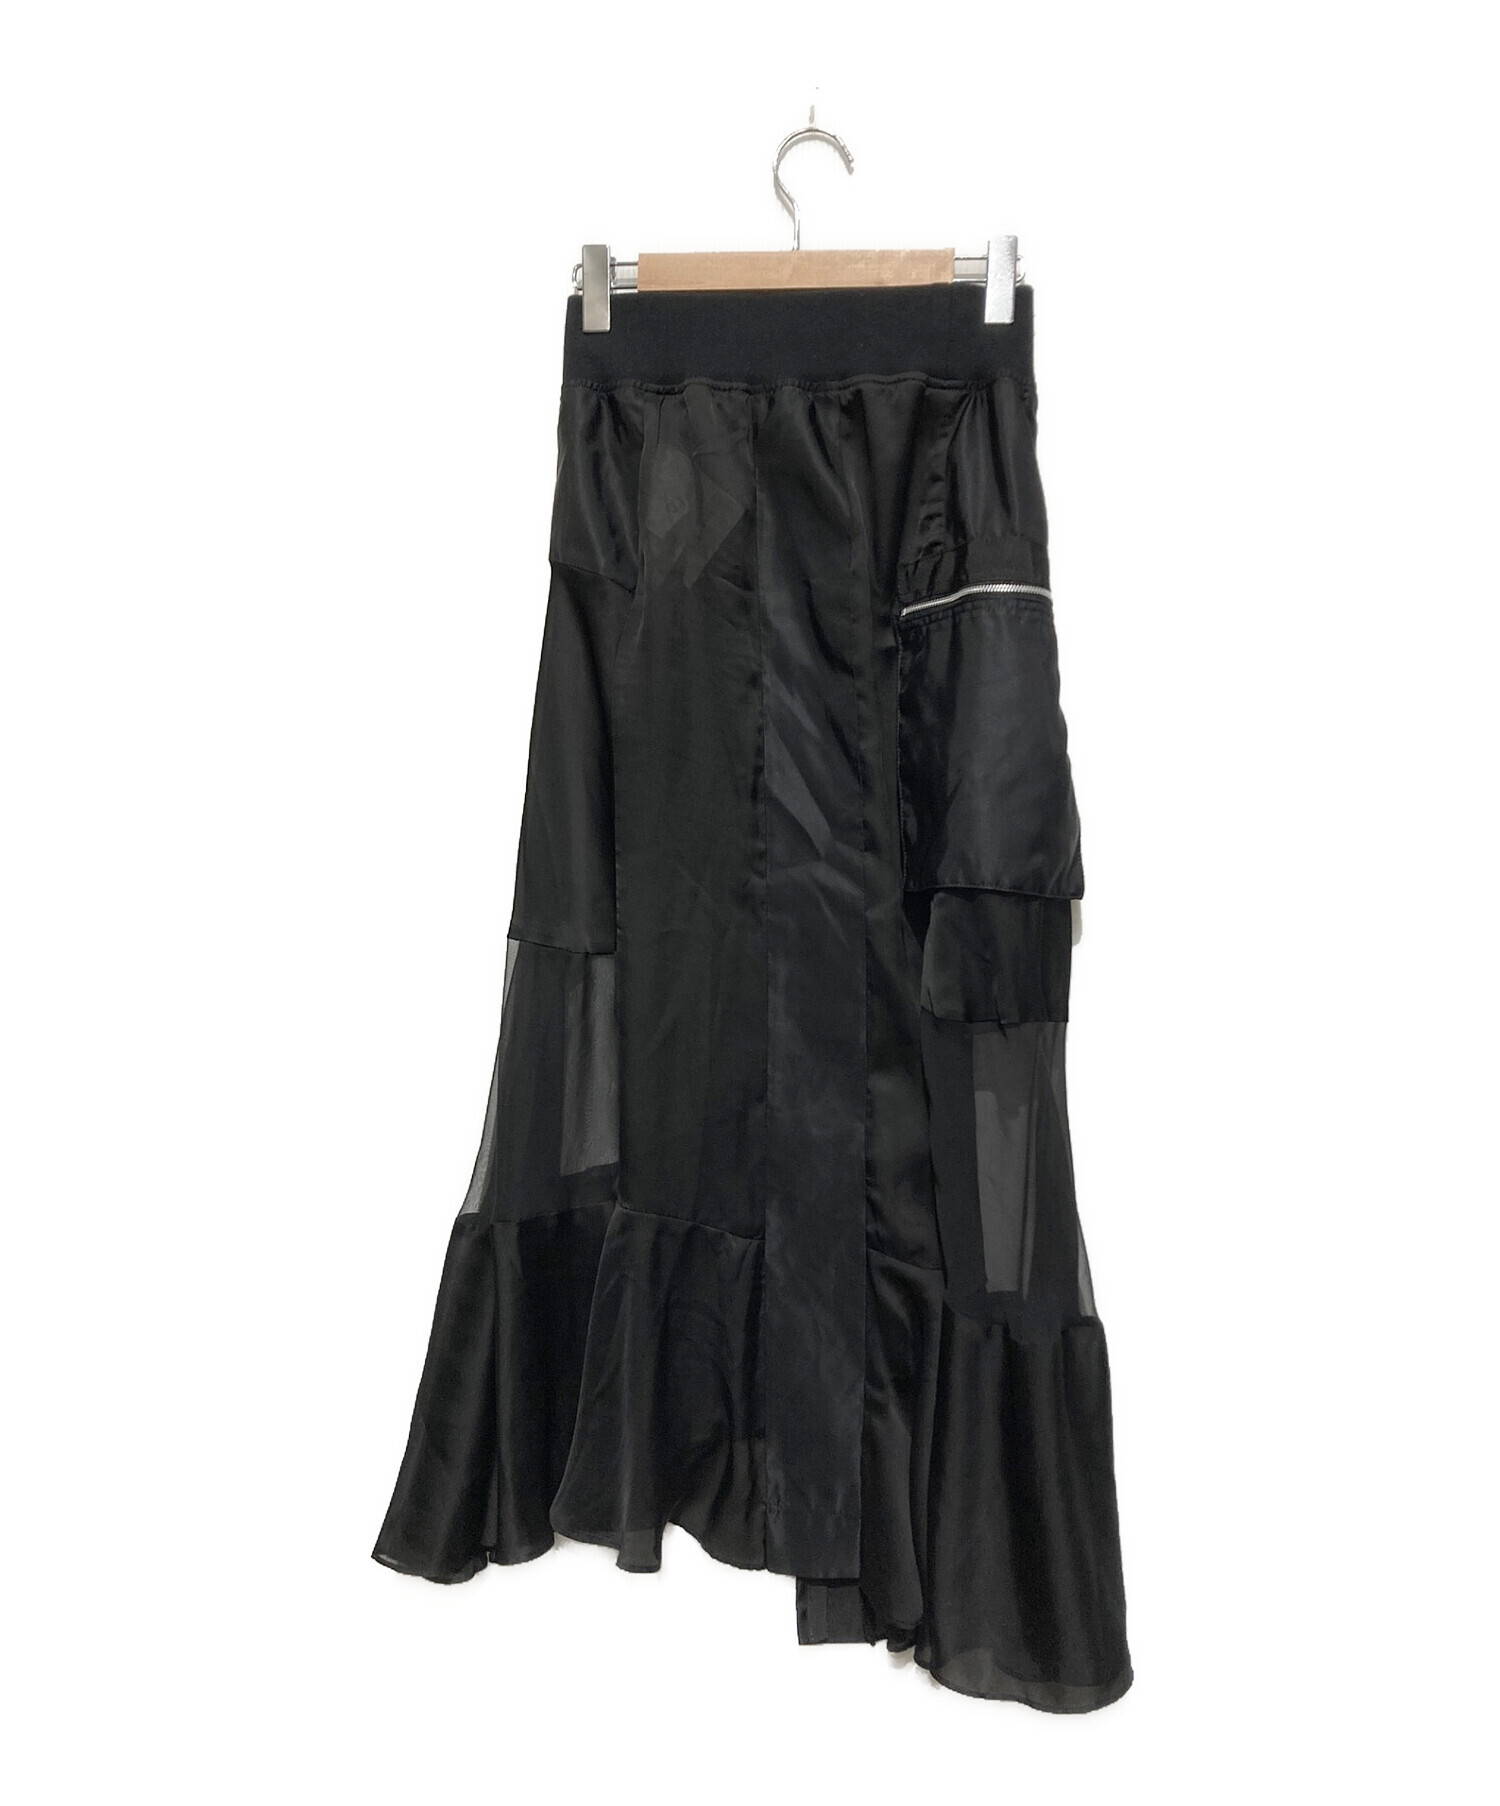 sacai (サカイ) ミリタリーシフォンアシンメトリーロングスカート ブラック サイズ:SIZE 2